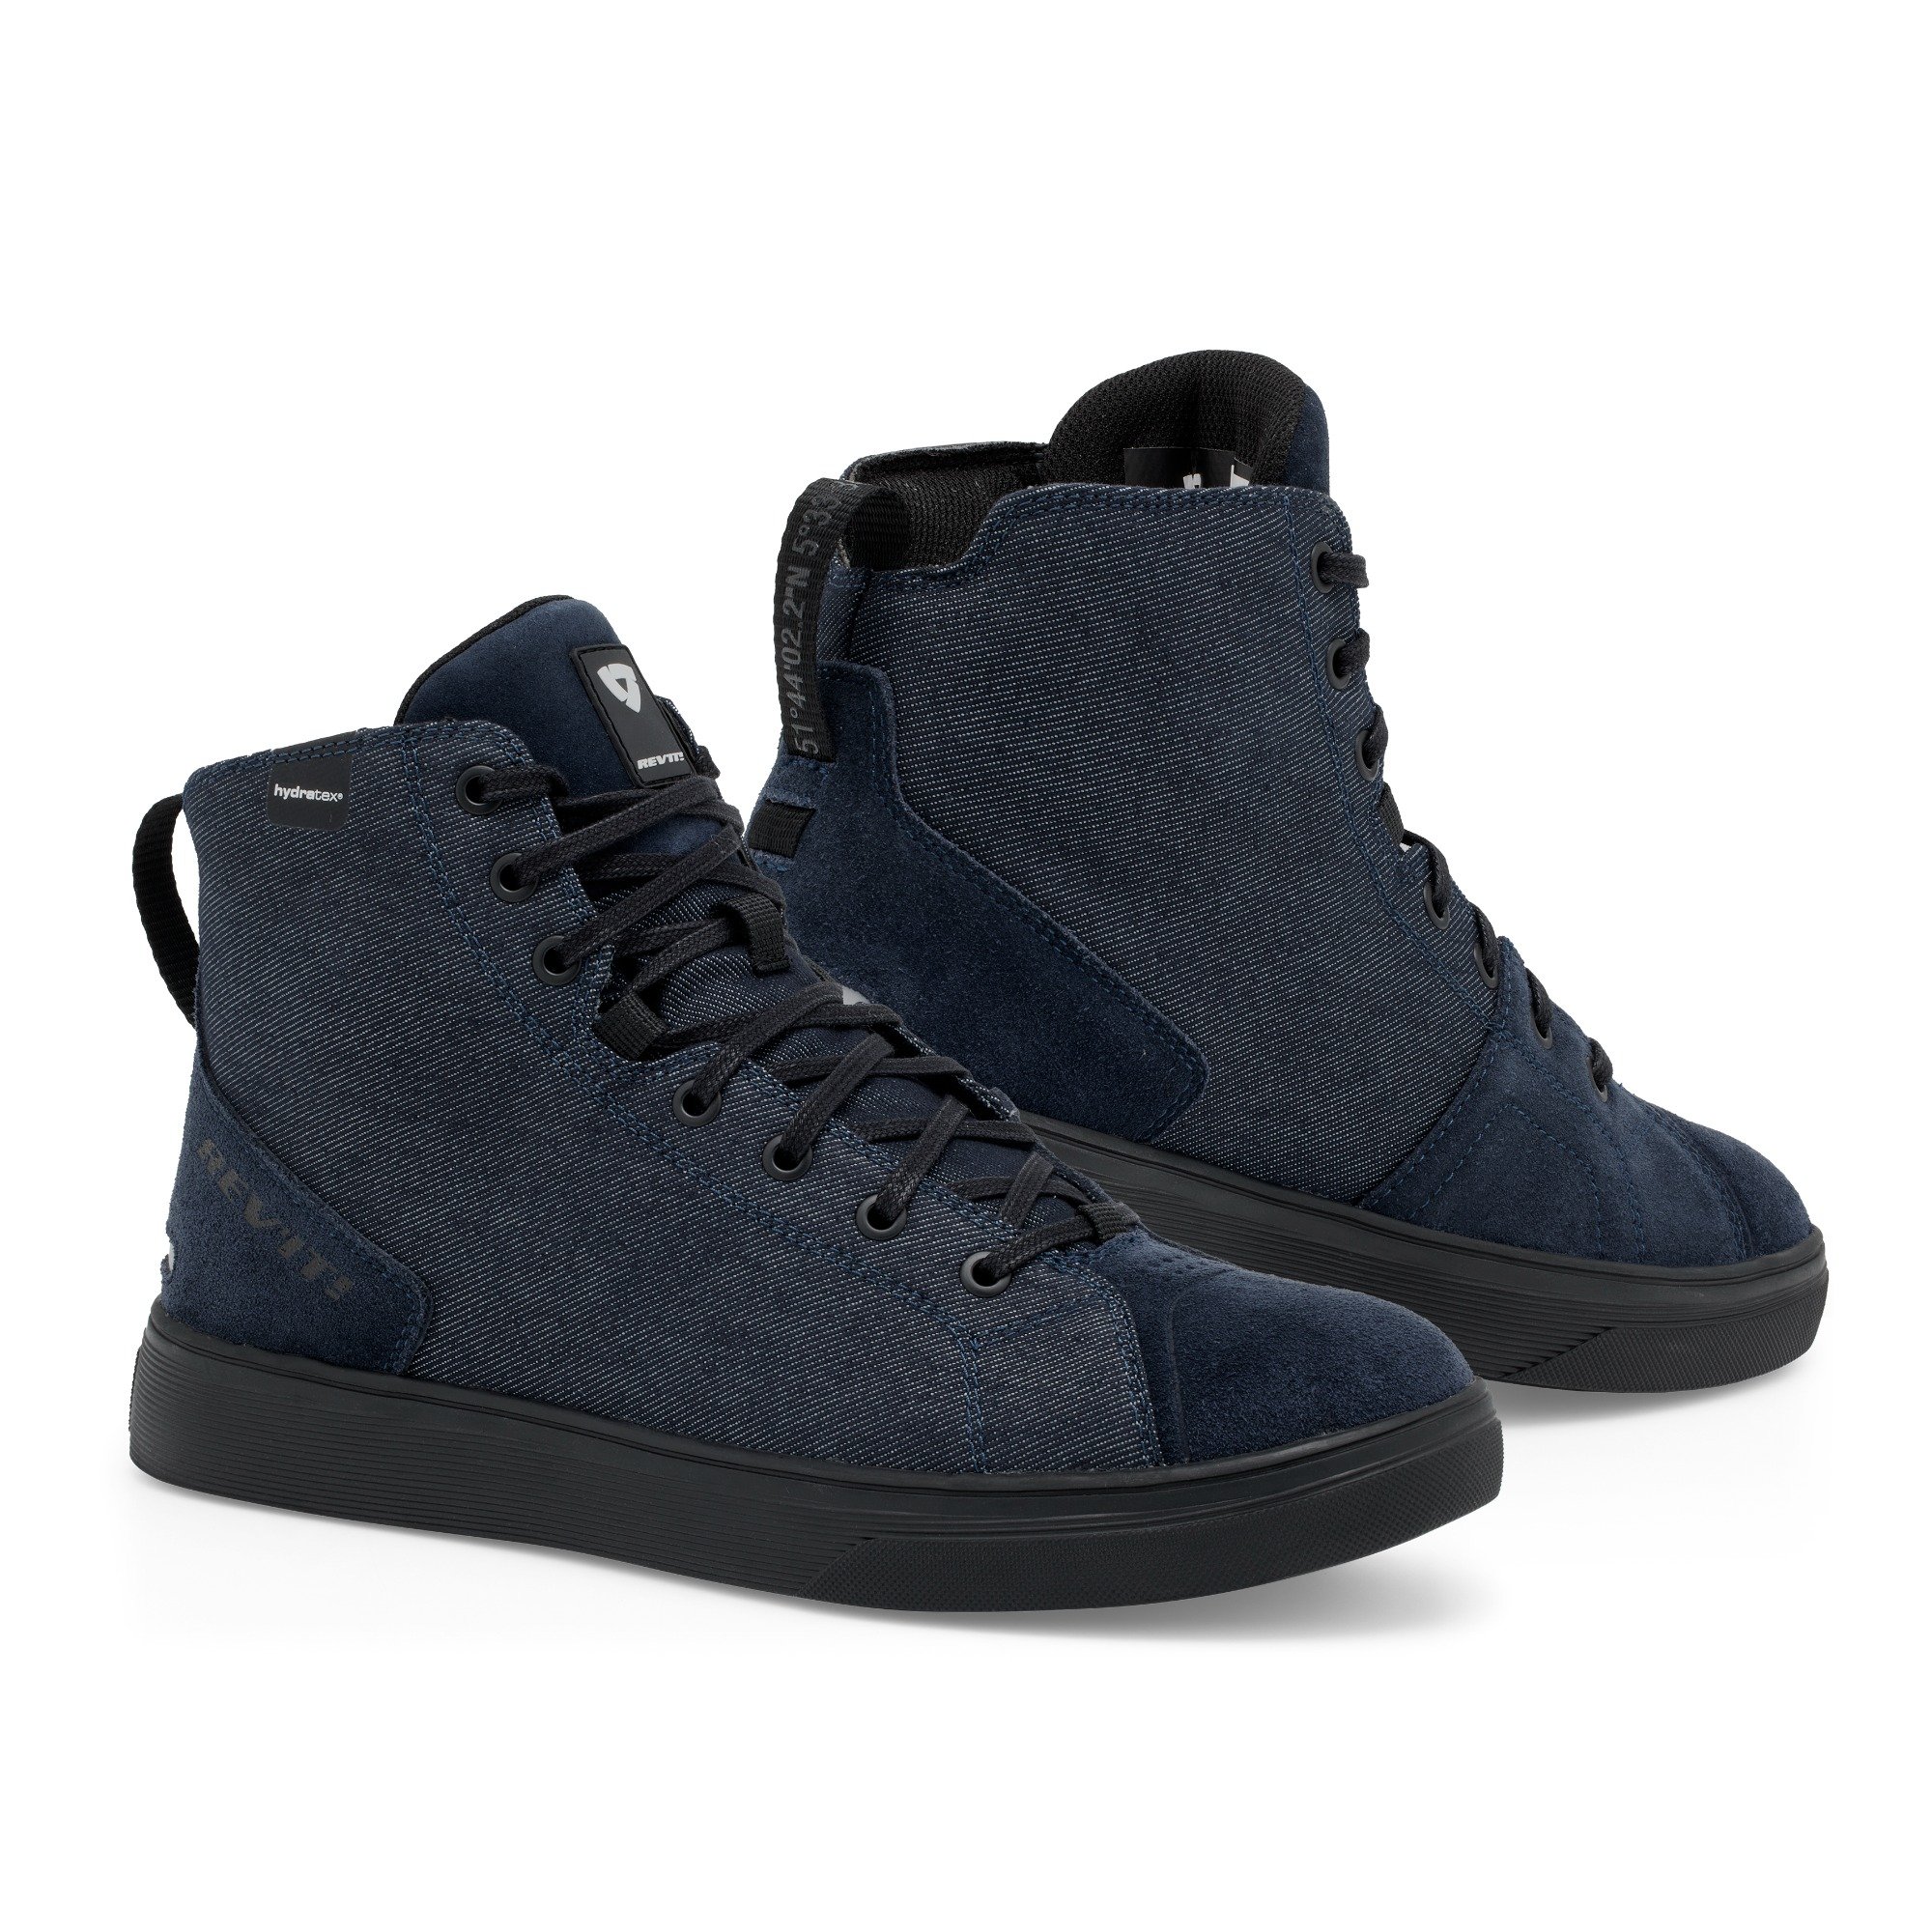 Image of EU REV'IT! Delta H2O Chaussures Foncé Bleu Noir Taille 45